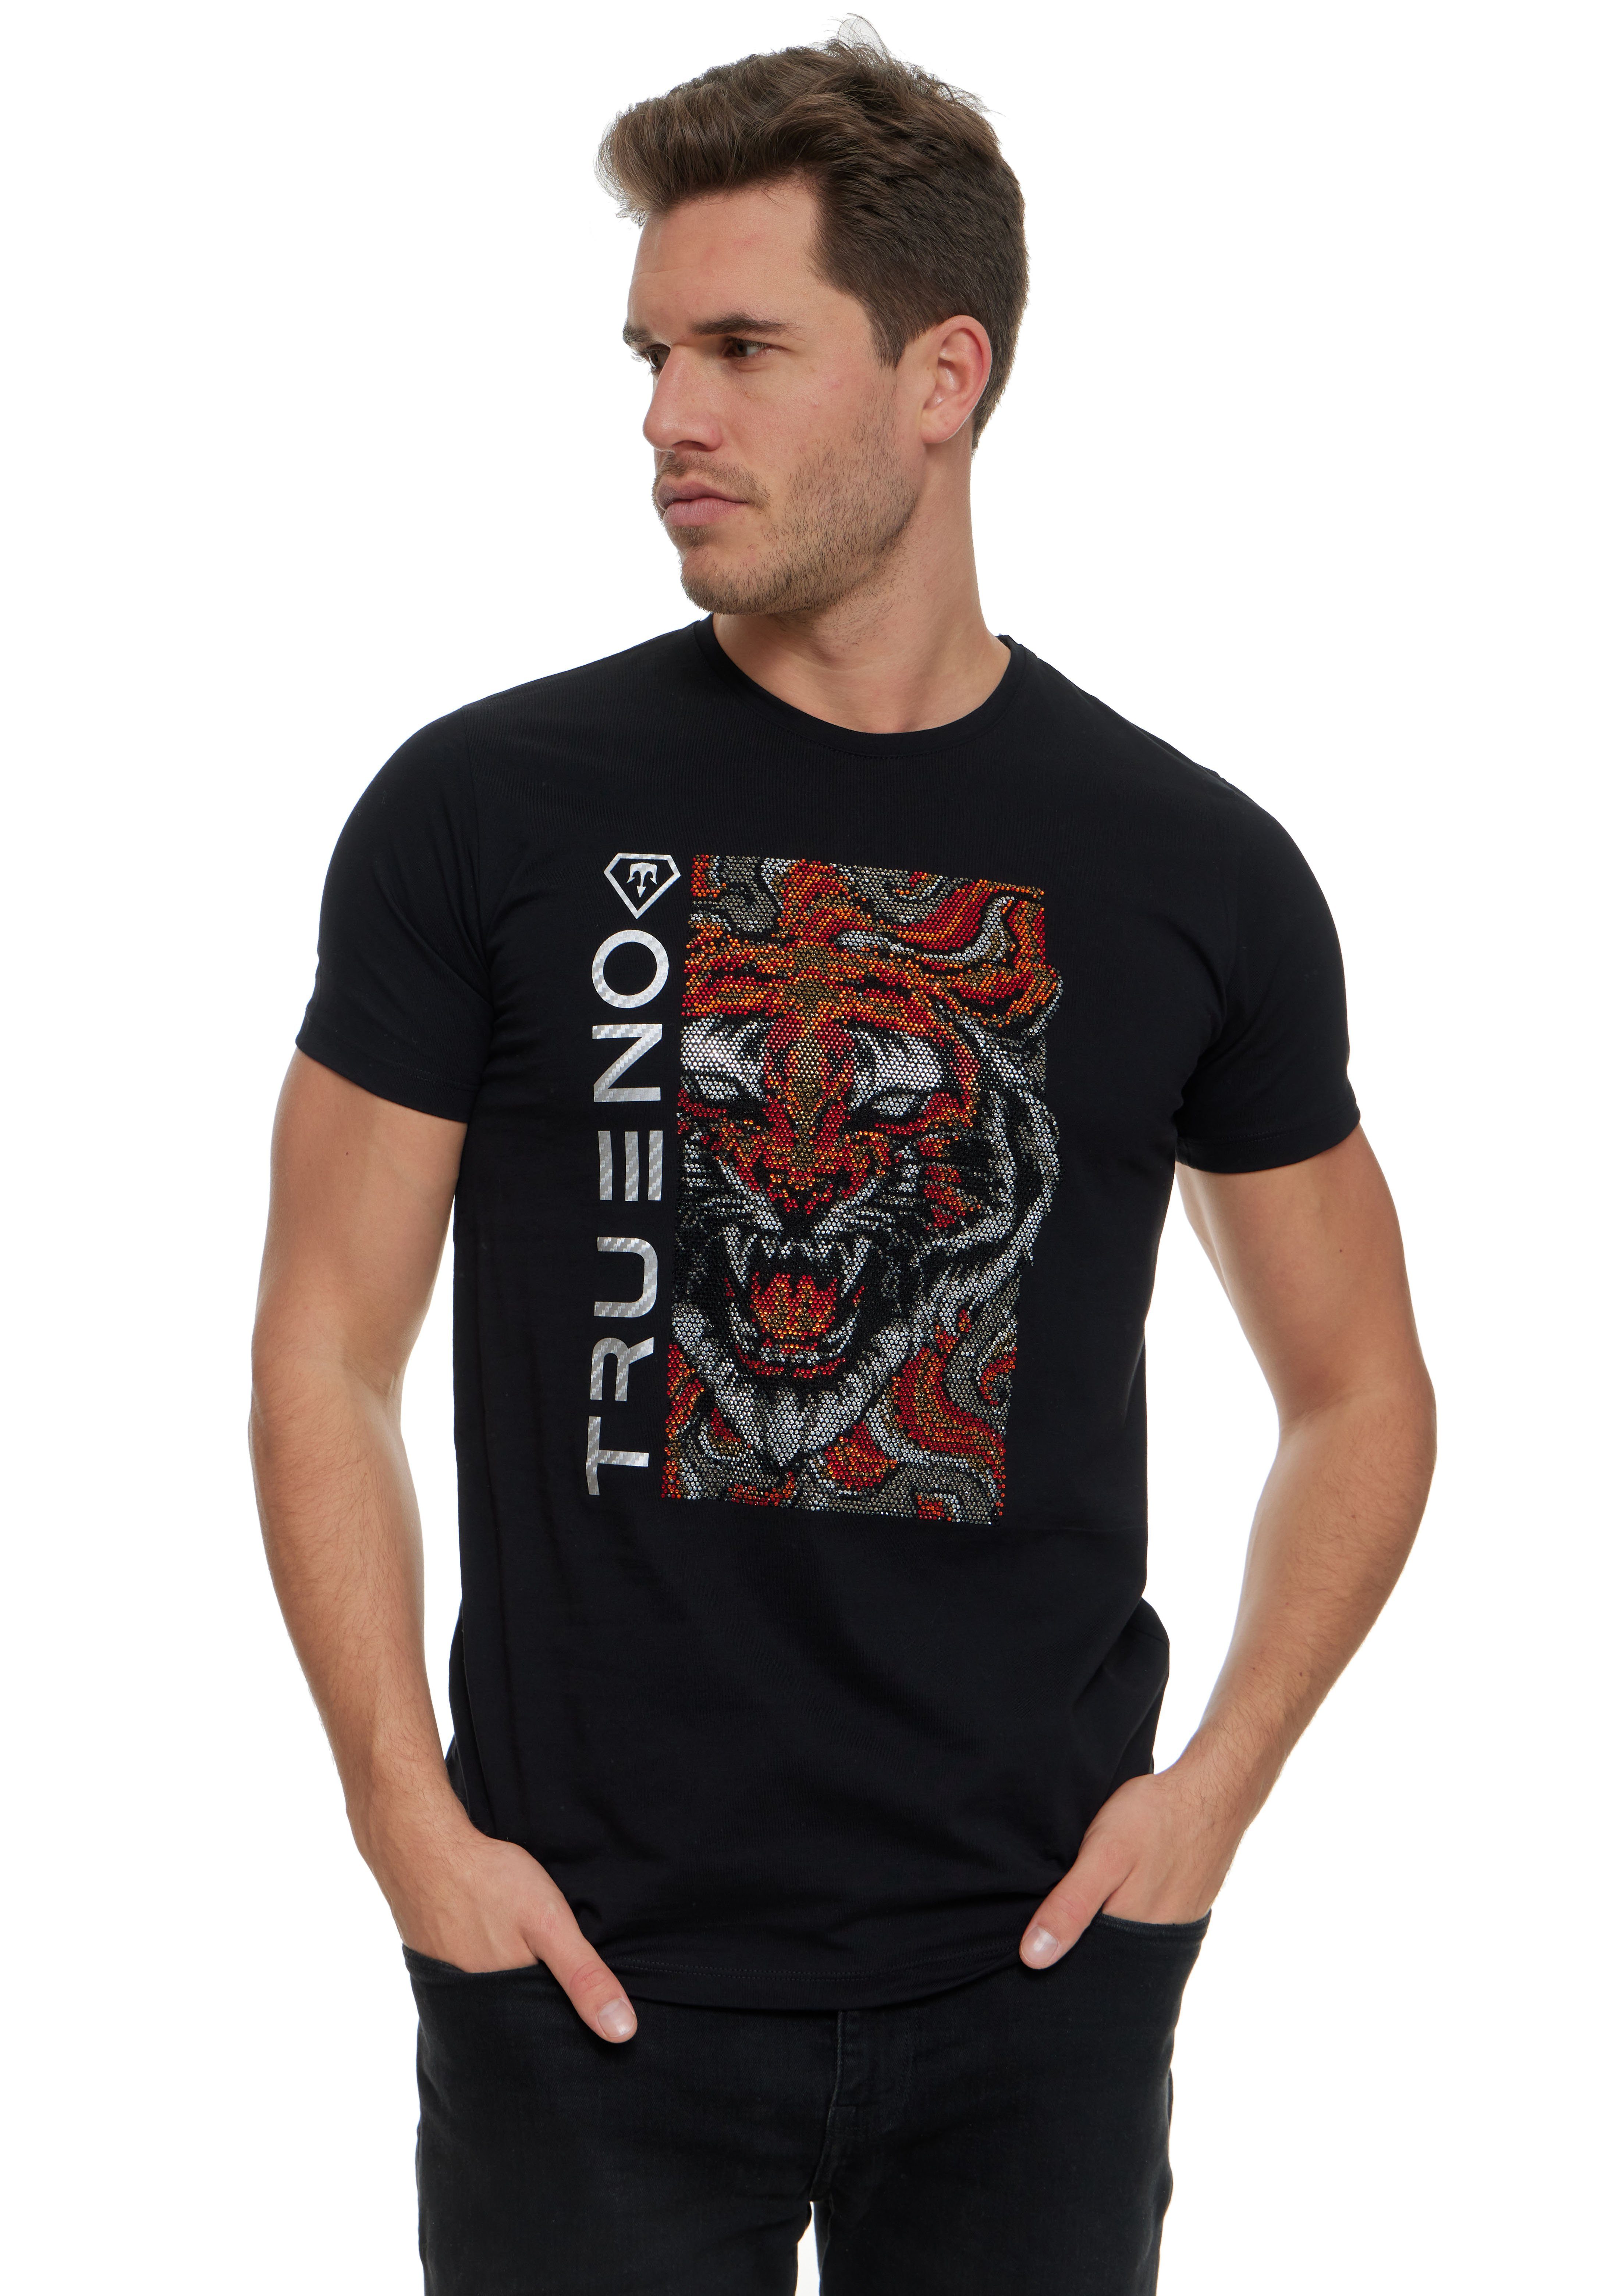 Strass mit TRUENO T-Shirt von Herren Kurzarm Tiger T-Shirt Motiv TRUENO